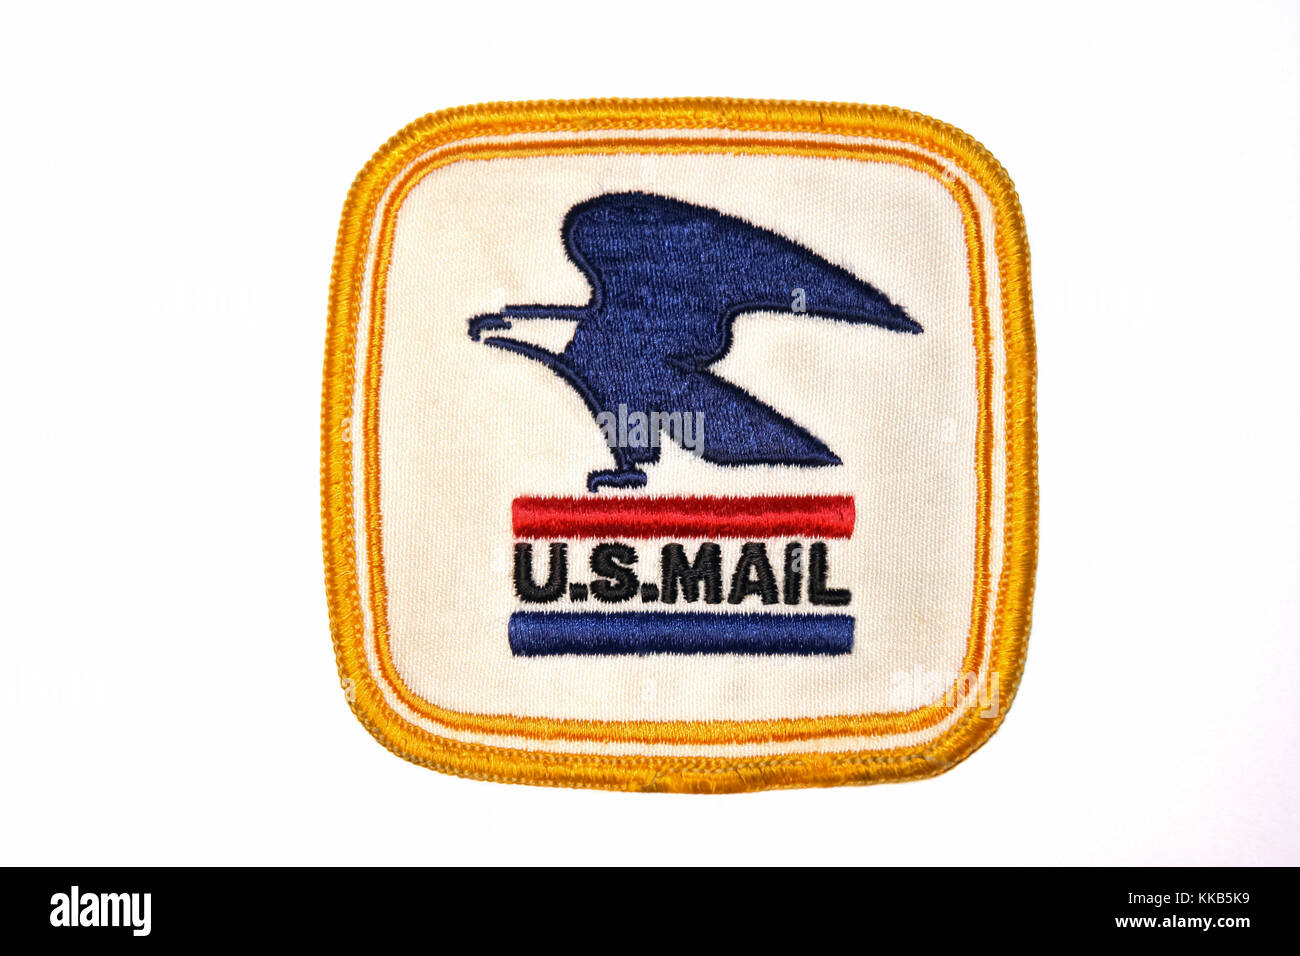 Historische United States Mail Adler Emblem Patch, der Briefträger trugen auf ihren Uniformen (1971-1991). Stockfoto